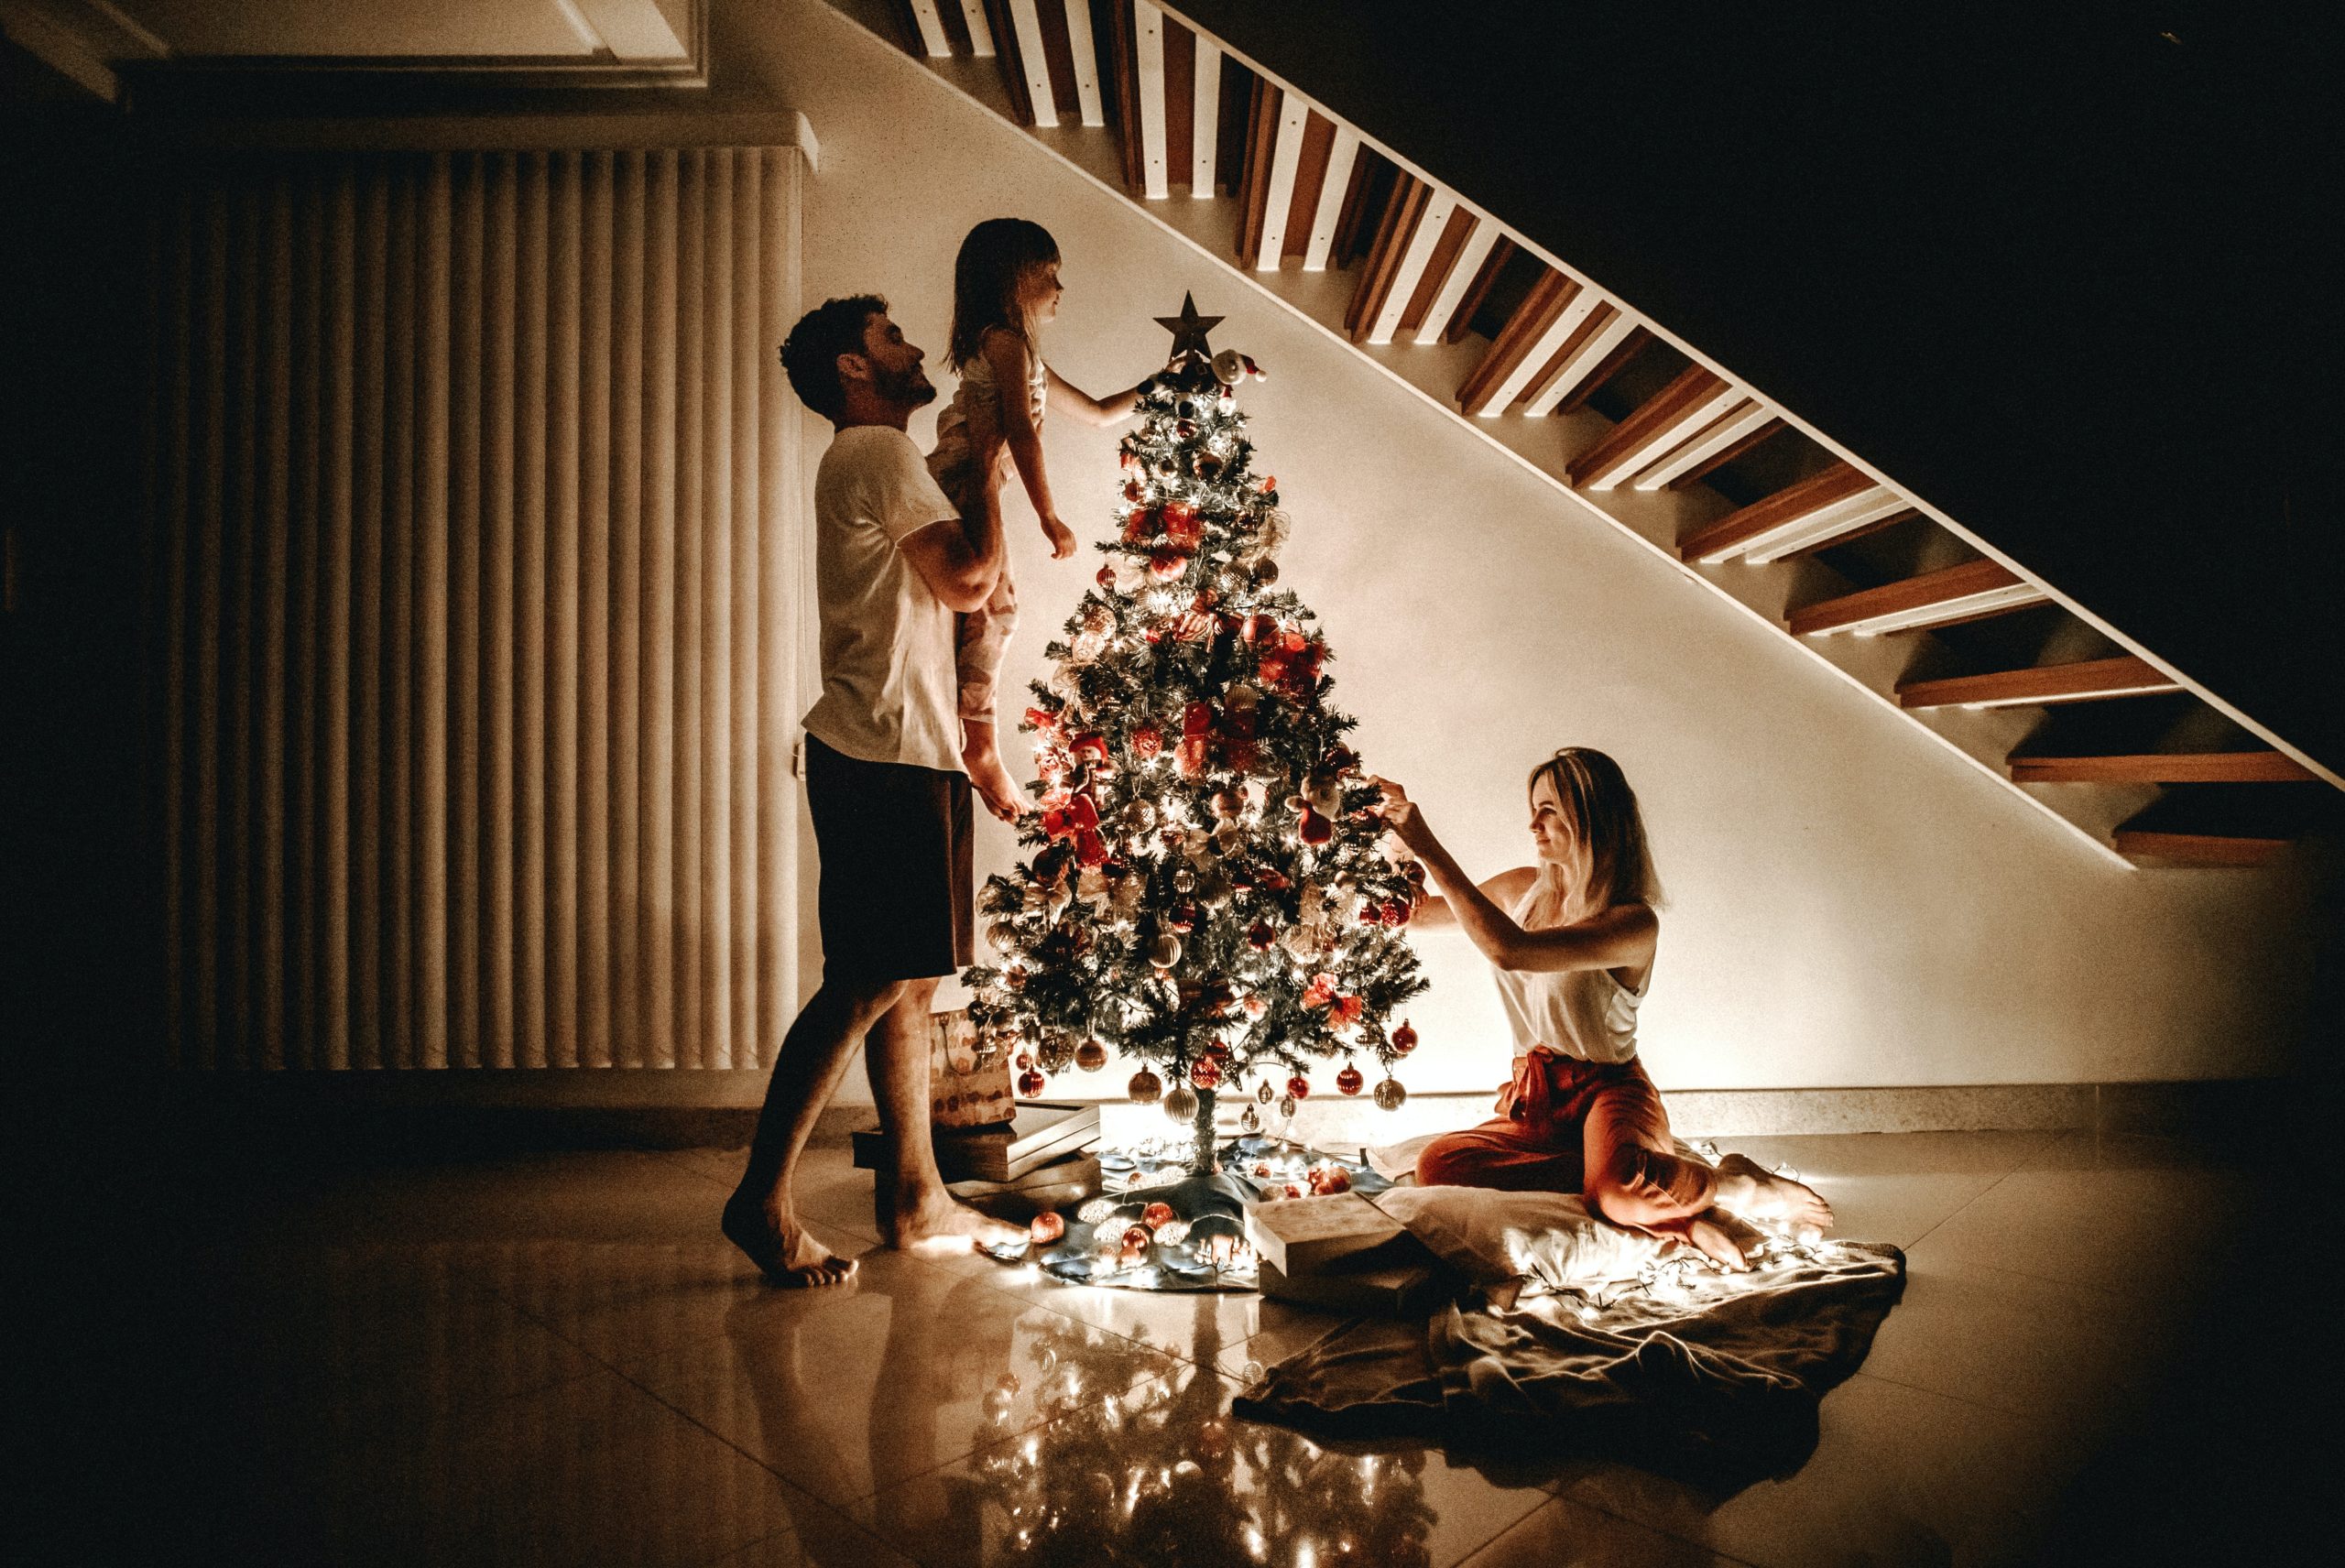 Πώς να στολίσετε το χριστουγεννιάτικο δέντρο σαν επαγγελματίας - Τα 3 απλά βήματα και έξυπνα tips